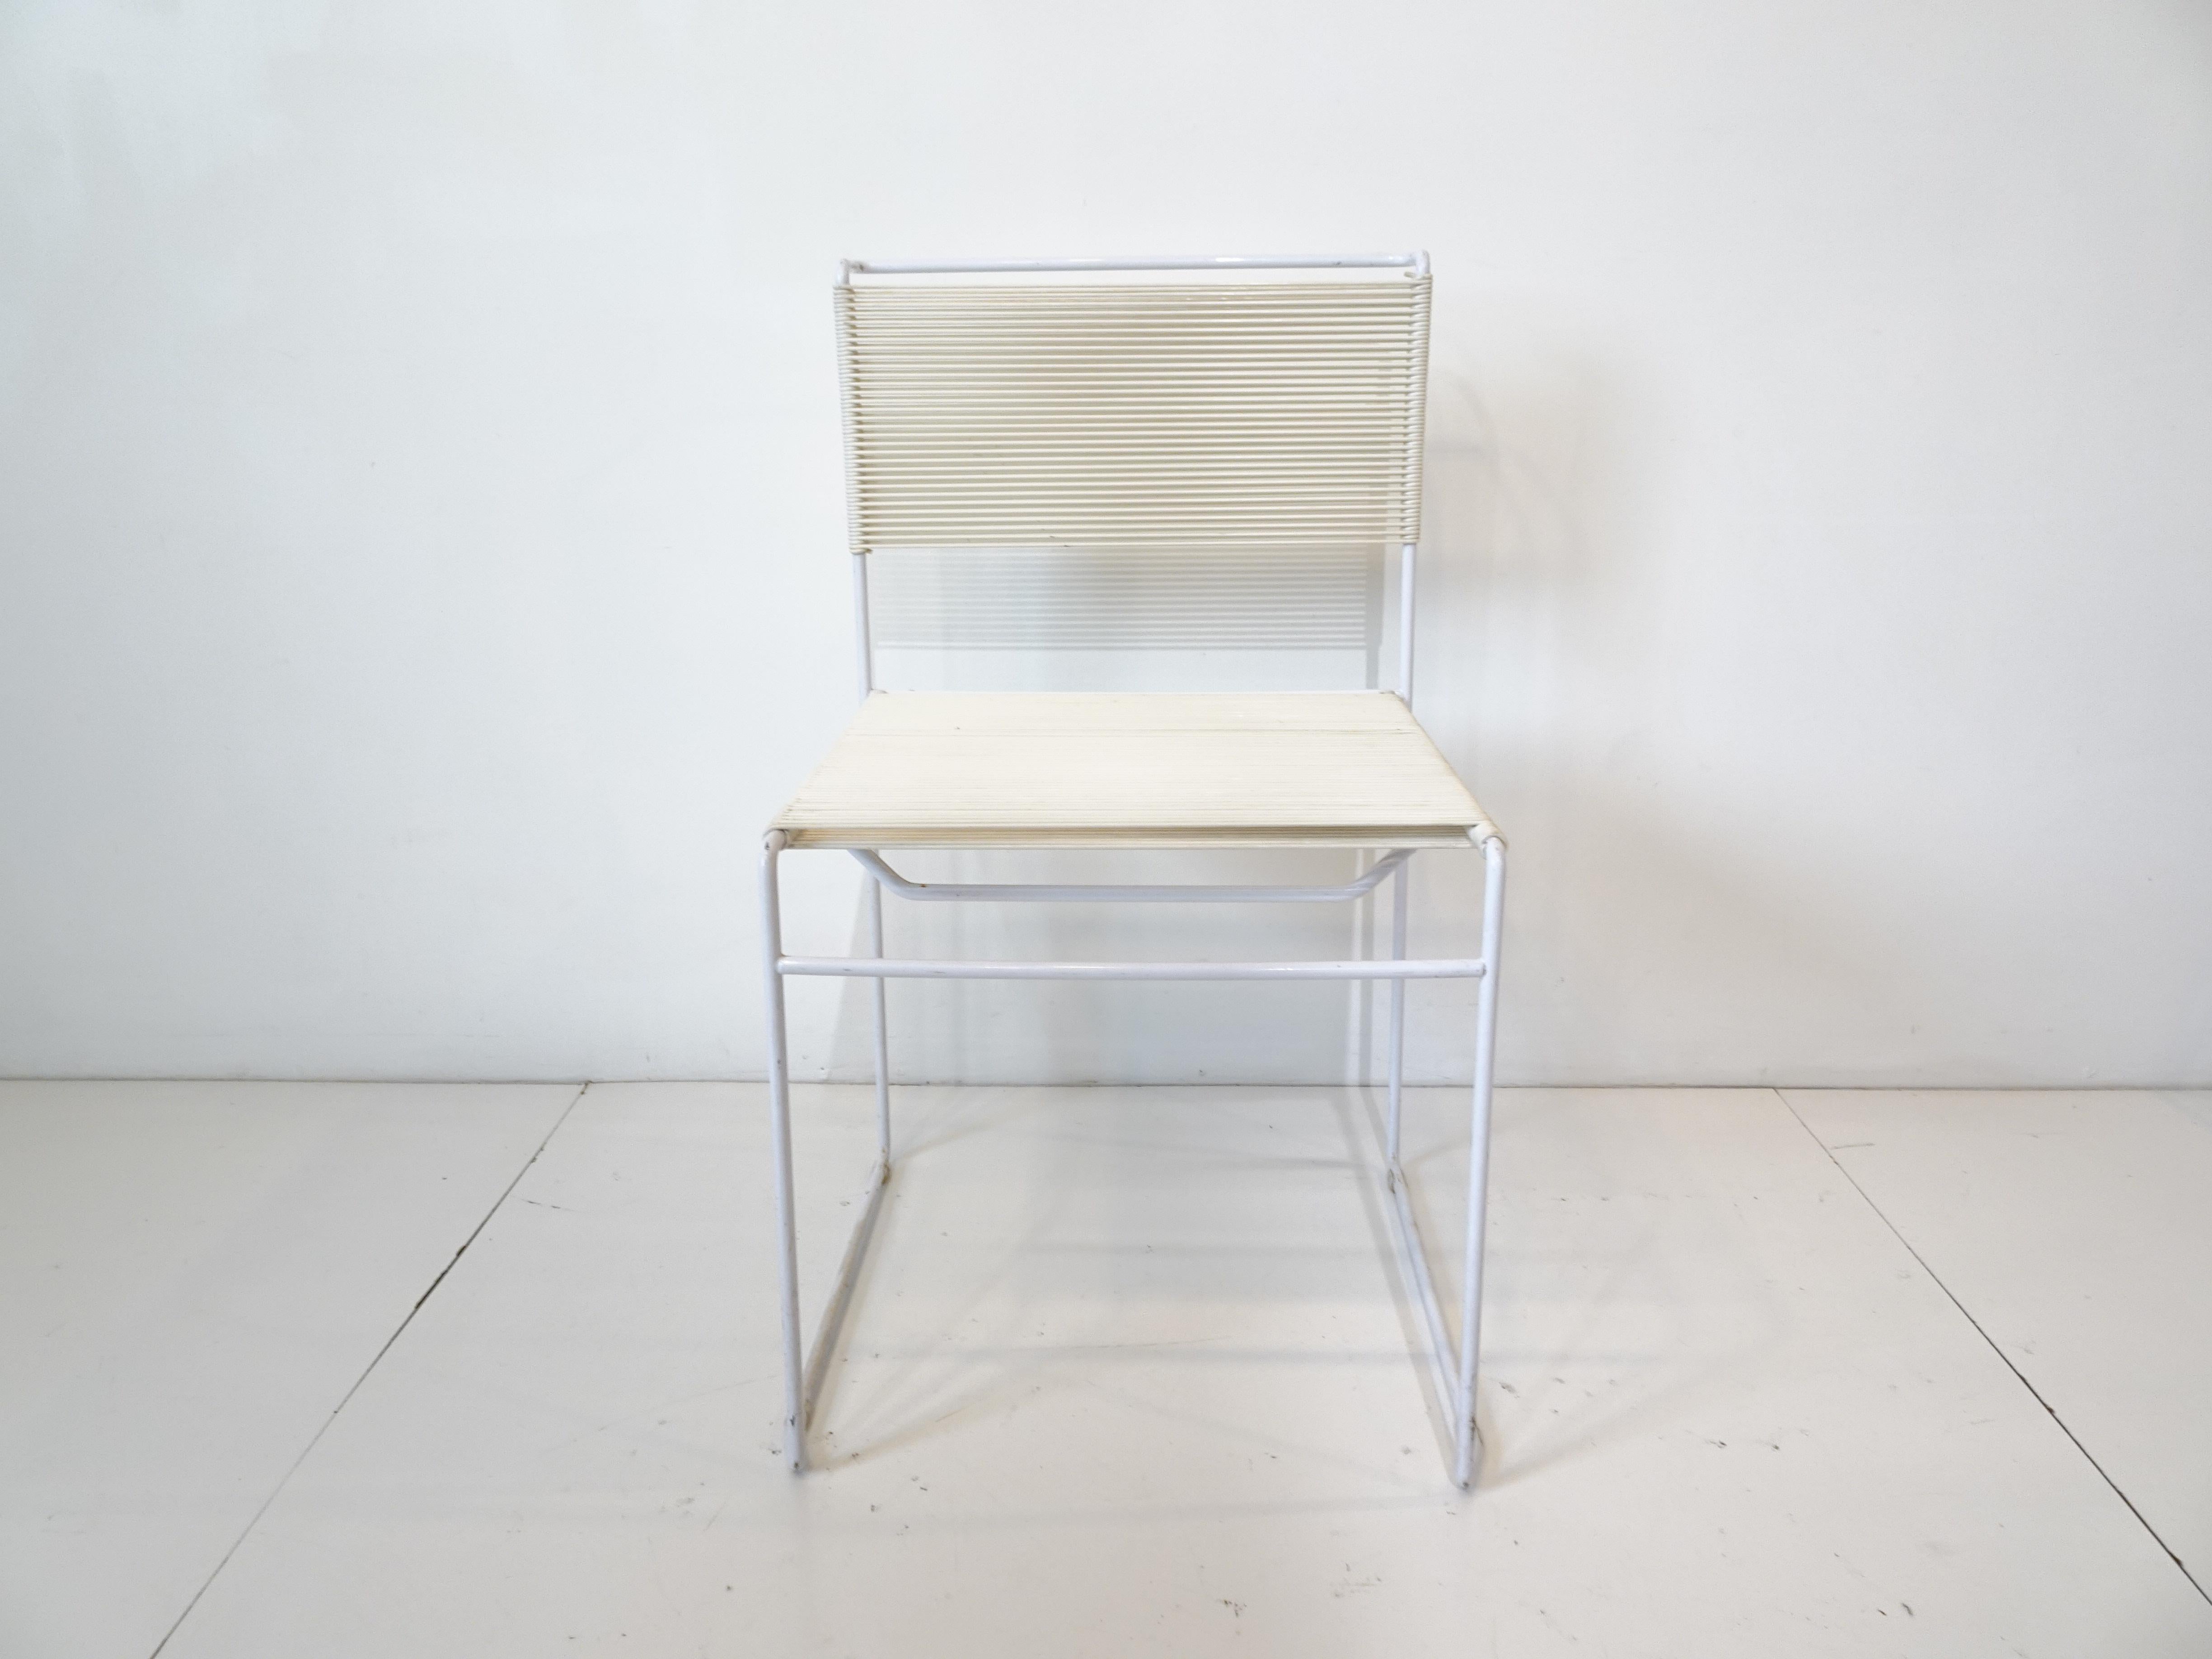 Ein Satz von vier Esszimmerstühlen mit weißem PVC-Stahlrahmen und Sitz und Rückenlehne aus geflochtenem Nylonseil, genannt Spaghetti-Stuhl, entworfen von Giandomenico Belotti. Hergestellt in Italien von Flyline / Alias mit dem Memphis-Look, der